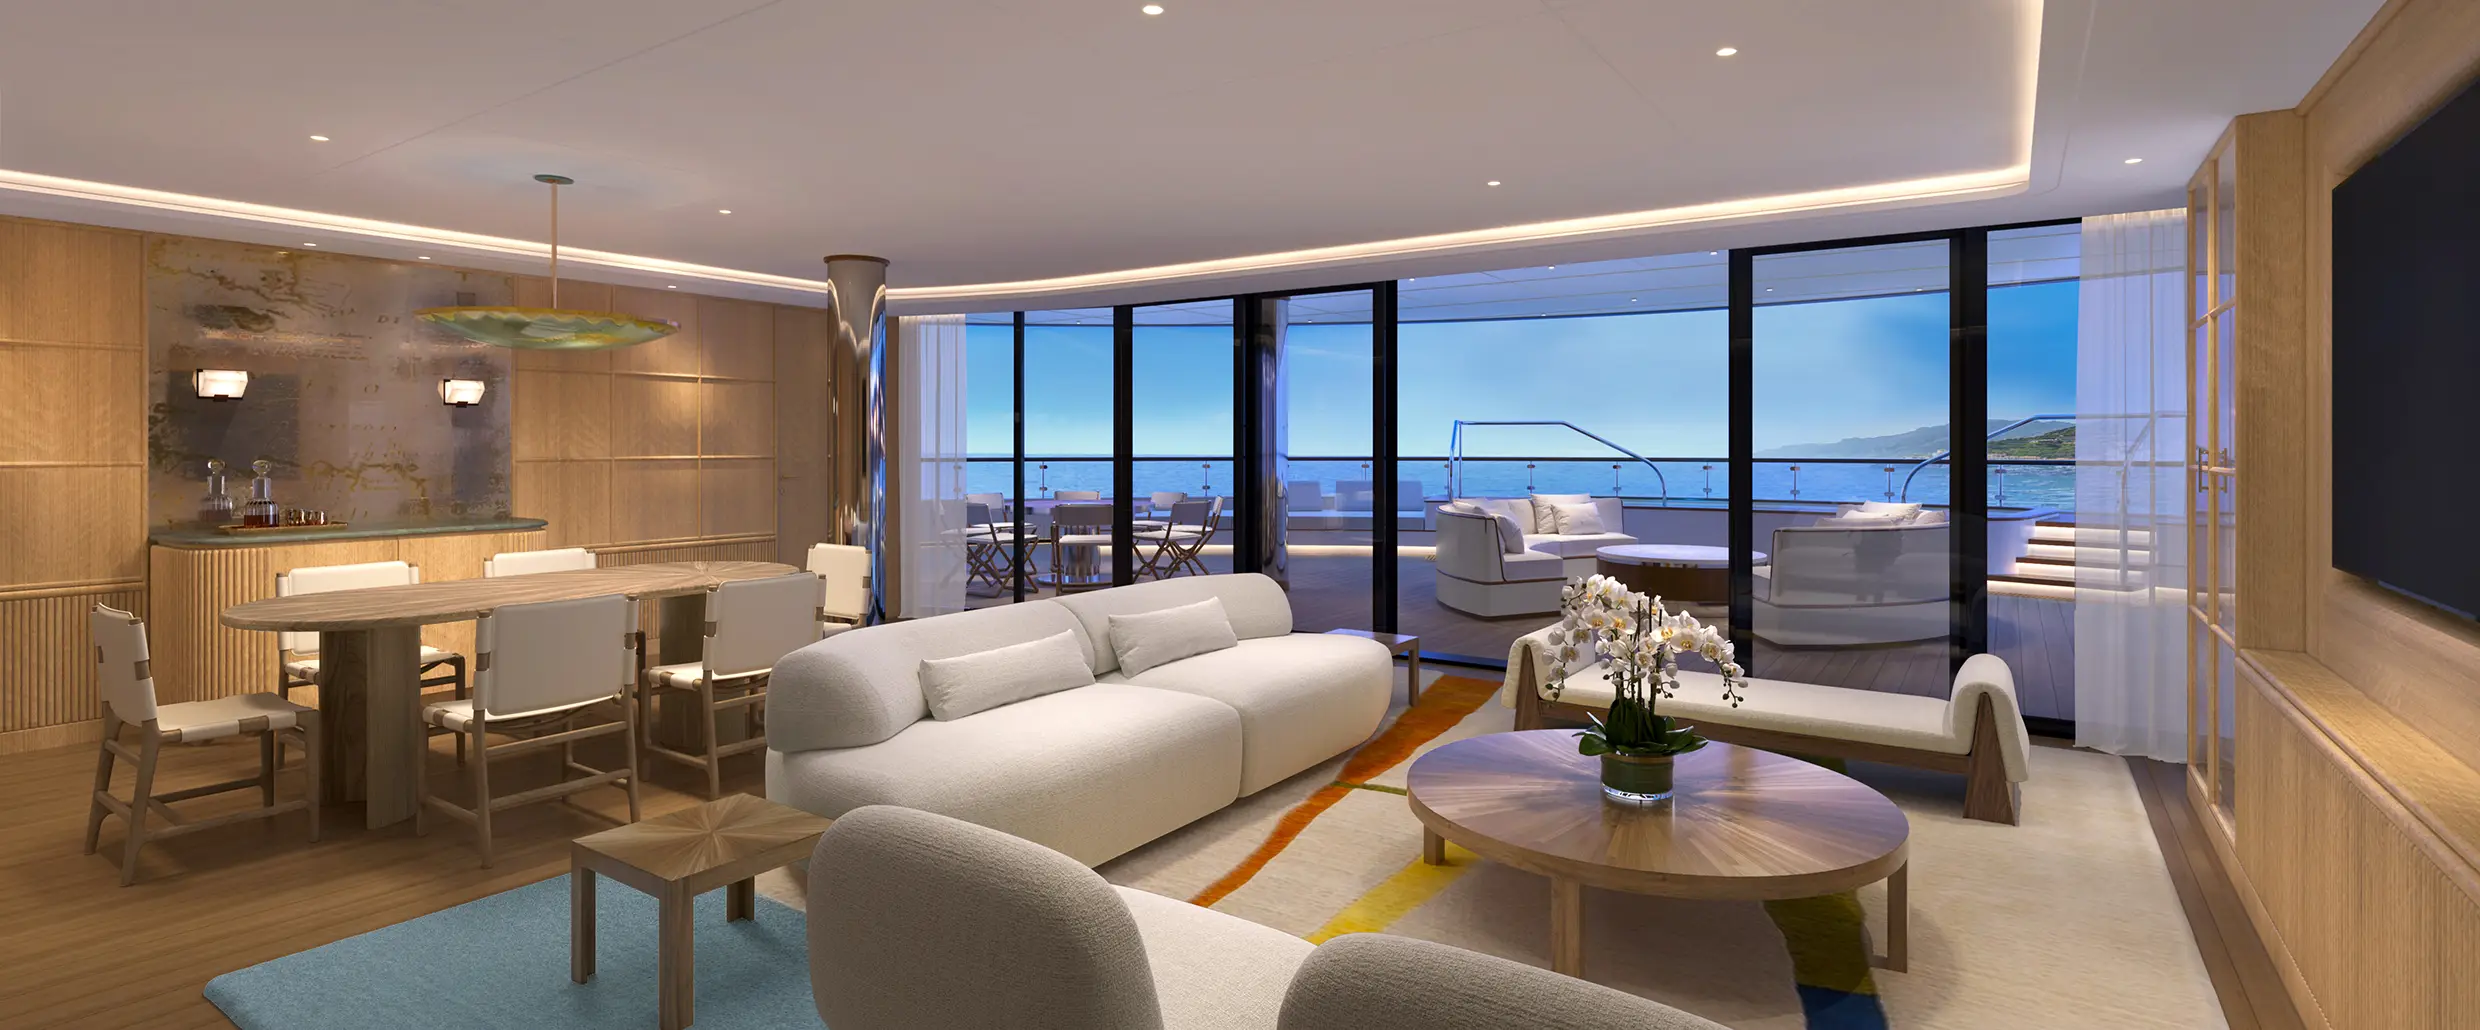 Saint-Tropez Suite - Living room